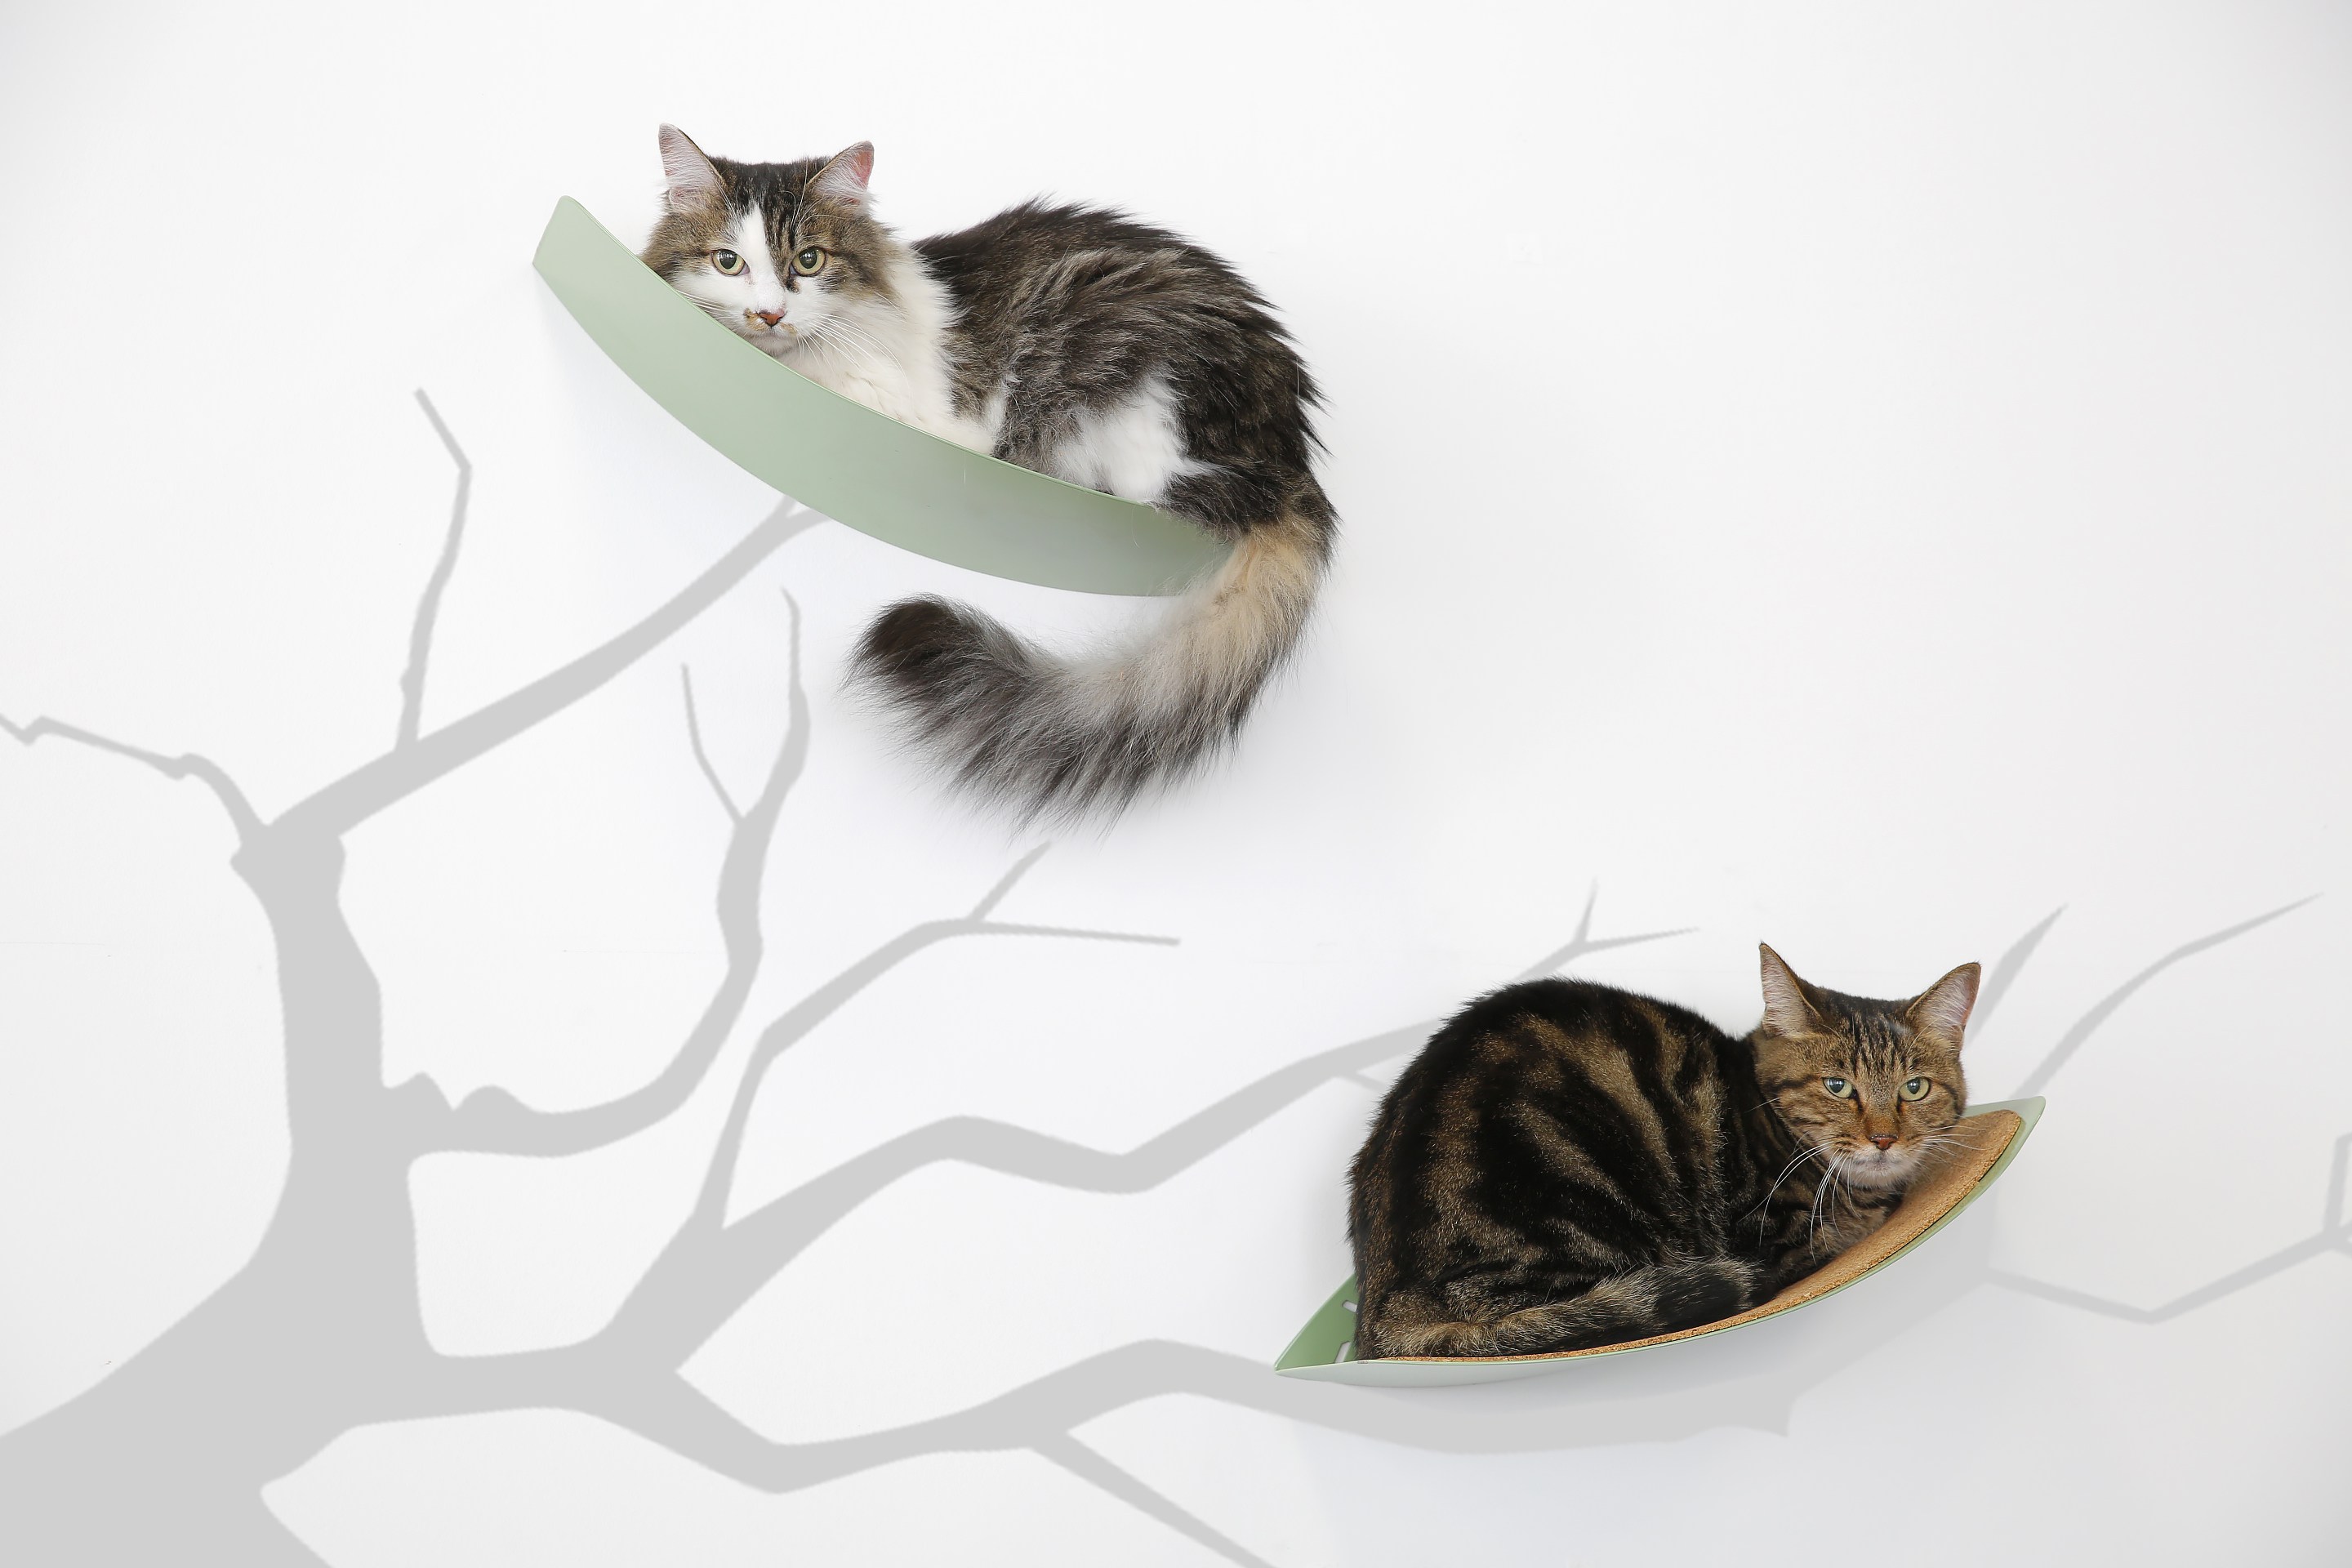 ふわりと浮かぶ空飛ぶ葉っぱに丸まる猫たち、壁が絵になるキャットシェルフ